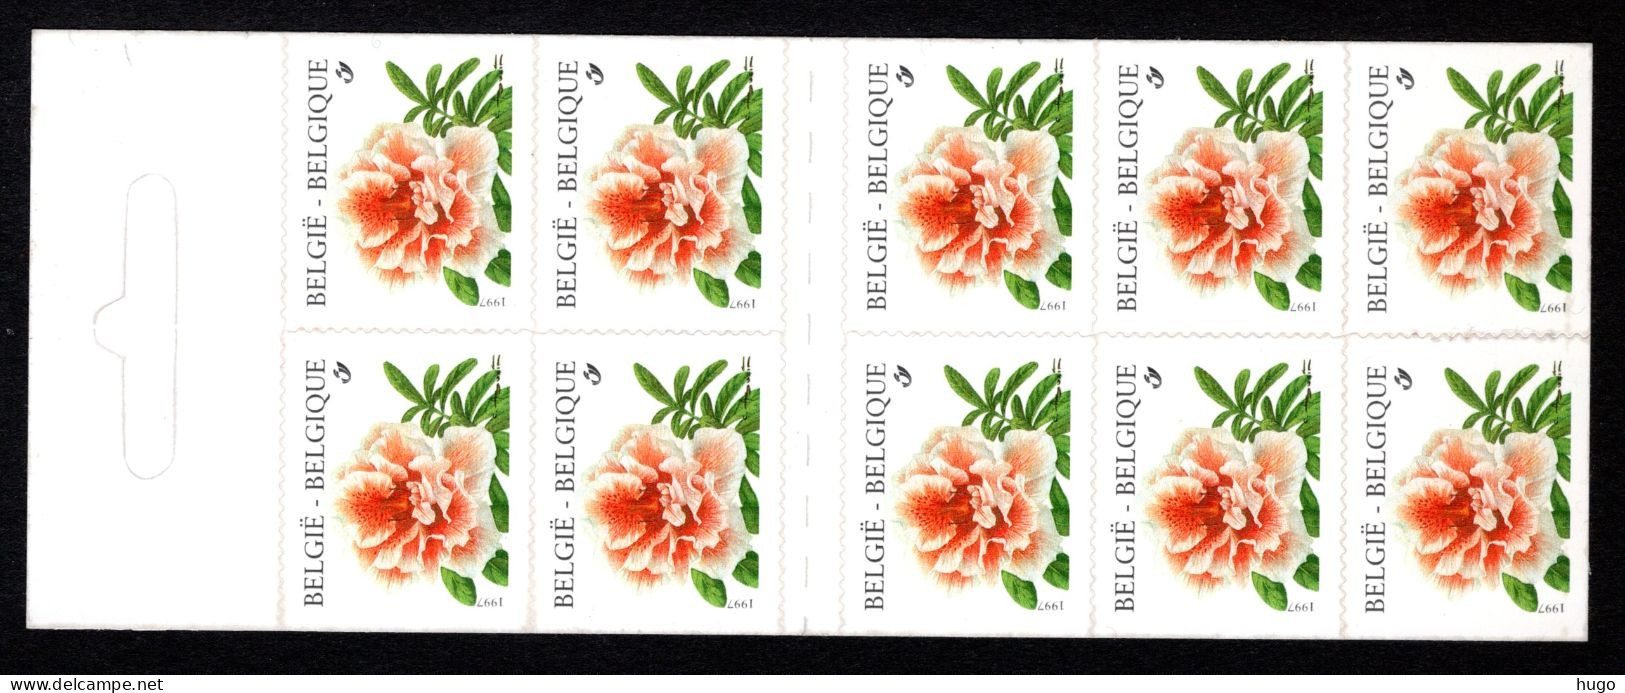 B29 MNH 1997 - Postzegelboekje - Unclassified